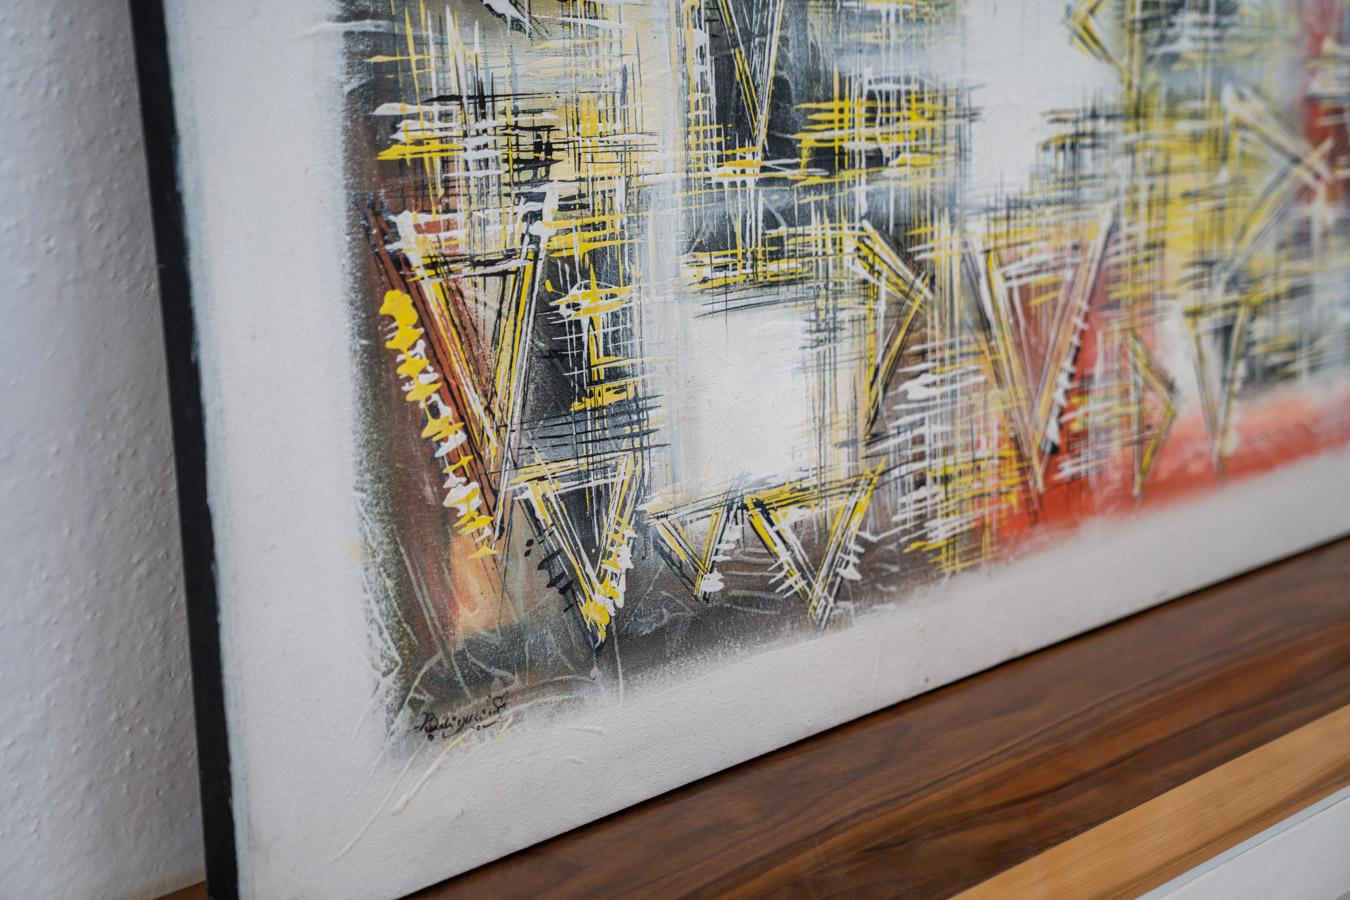 Abstraktes Gemälde auf Acryl-Leinwand aus den 2000er Jahren
PLANUNGSZEITRAUM 2000
JAHR DER HERSTELLUNG 2000
PRODUKTIONSLAND Italien
DESIGN
PRODUZENT
FARBE gelb, schwarz, weiß, rot, grün, grau, orange
MATERIAL Leinwand, Acryl, Holz
ZUSTAND